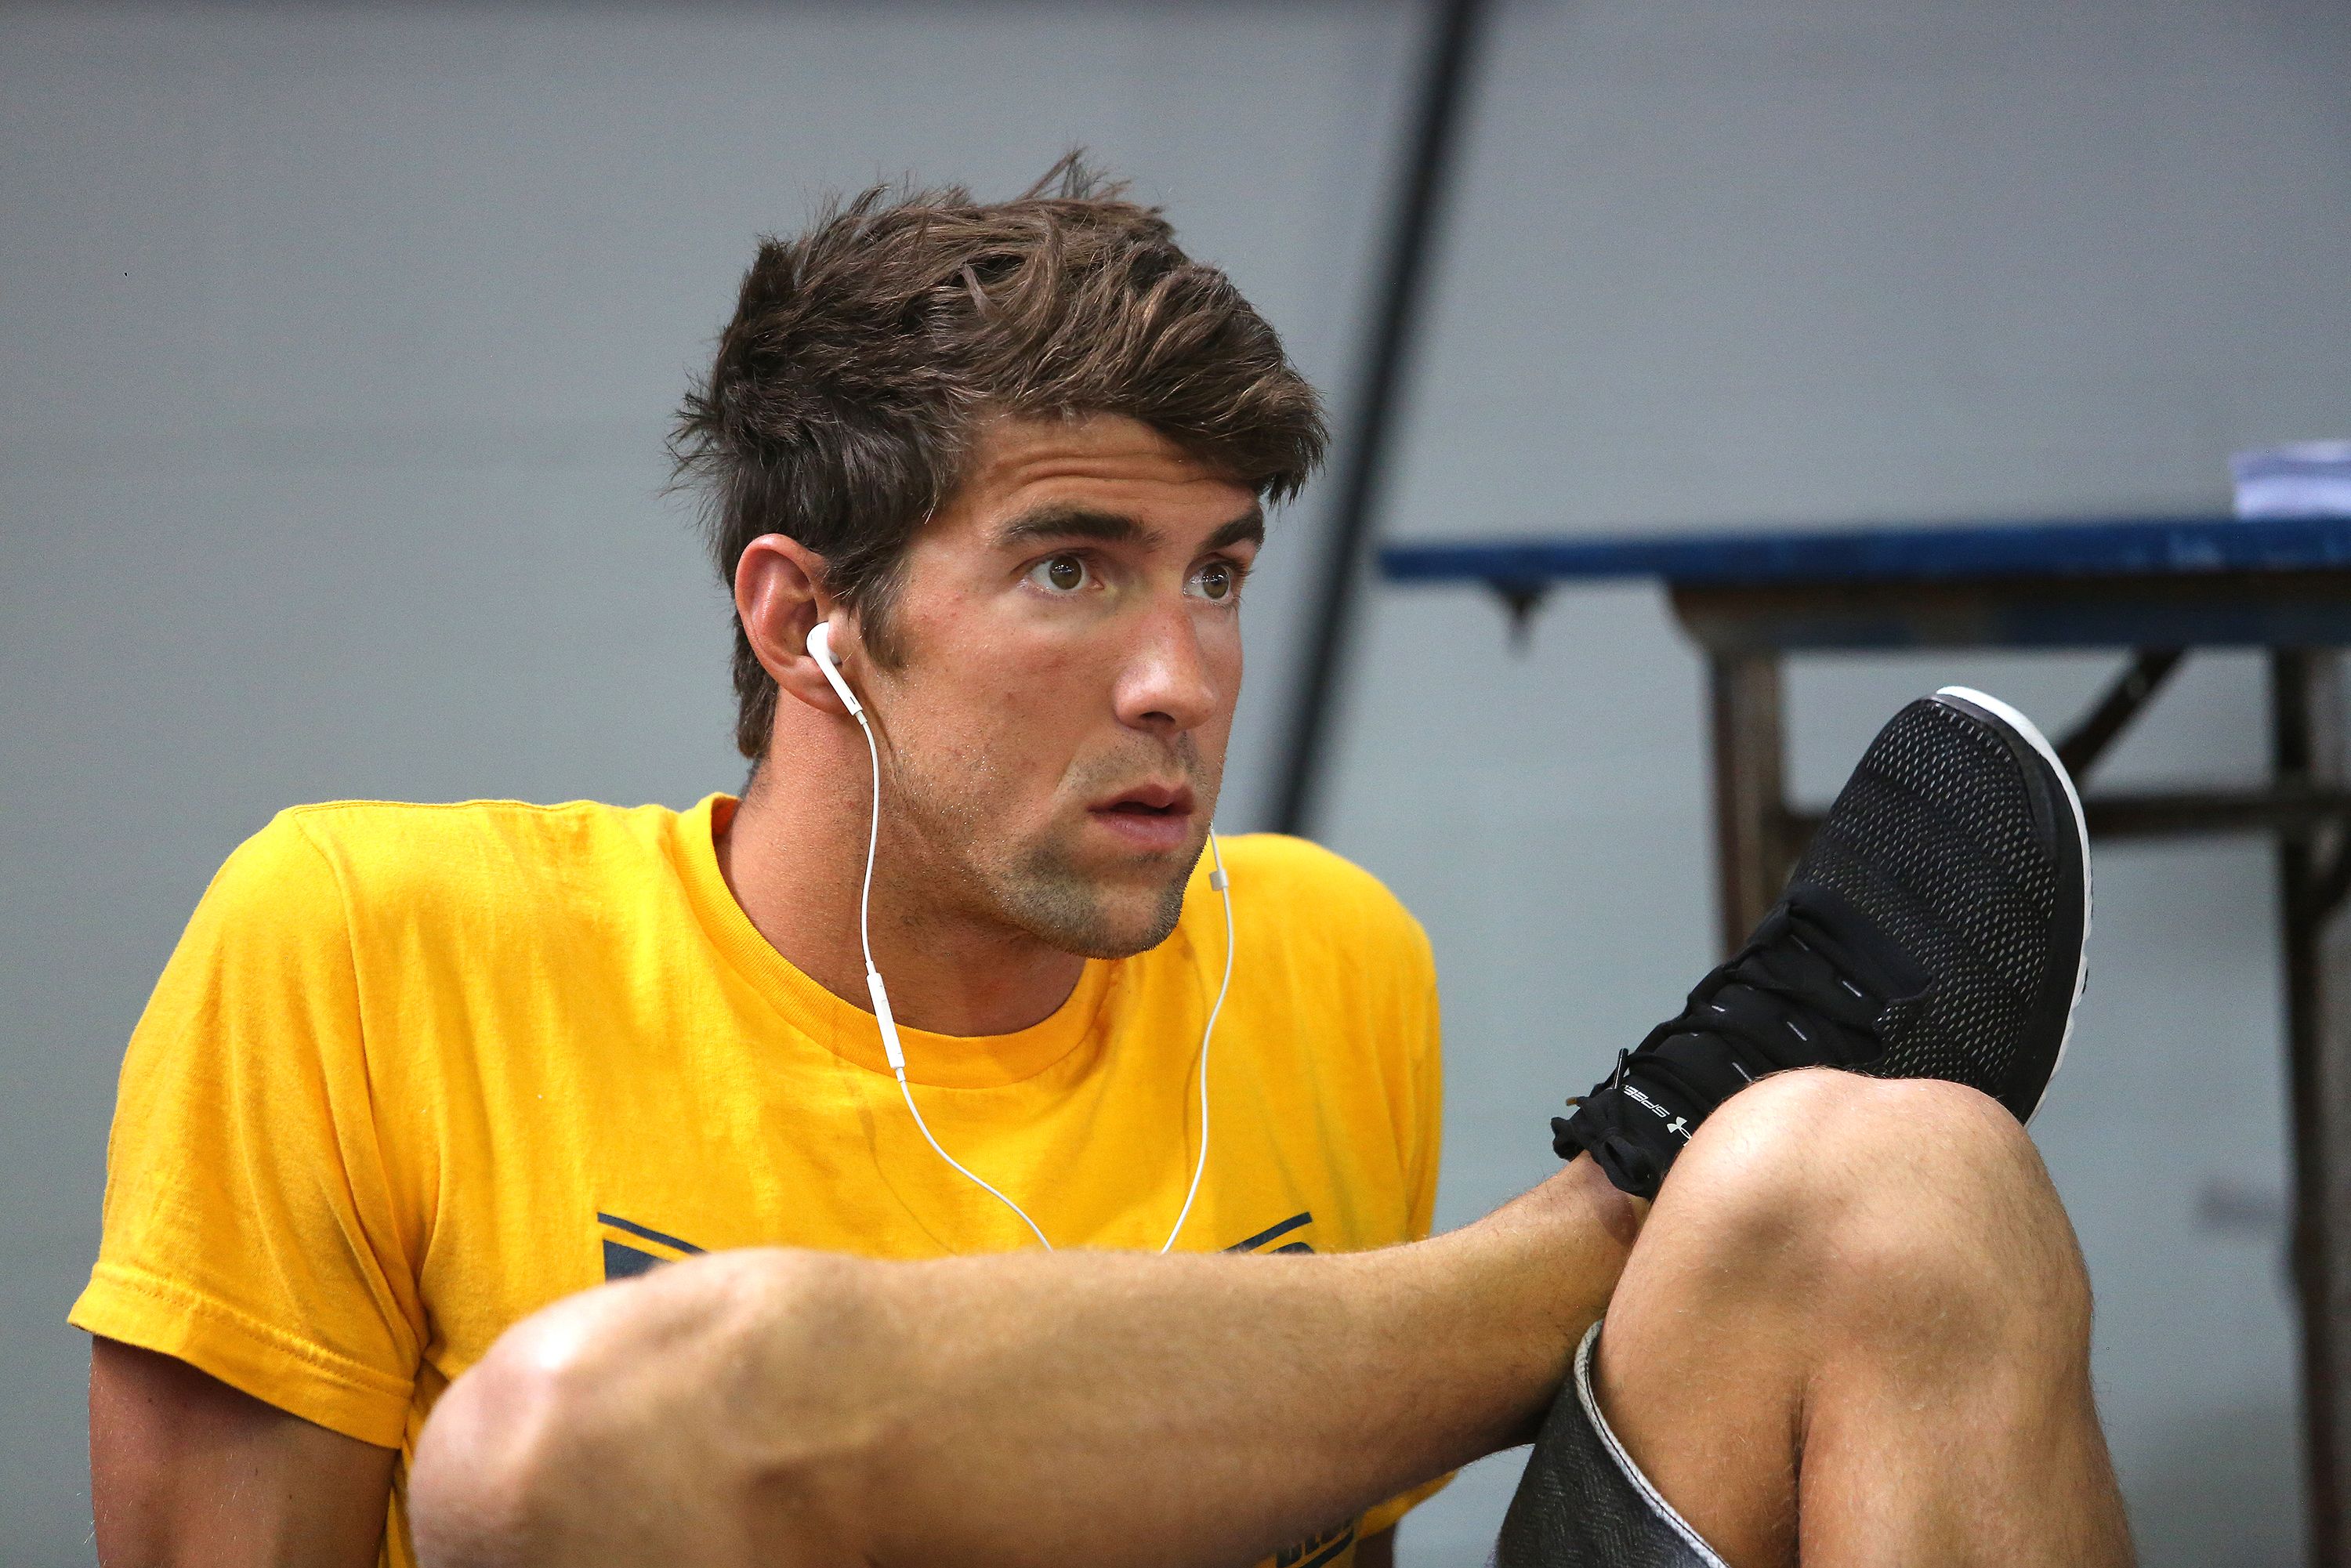 La mala experiencia de Michael Phelps en 5km: "Fue la peor idea del mundo"